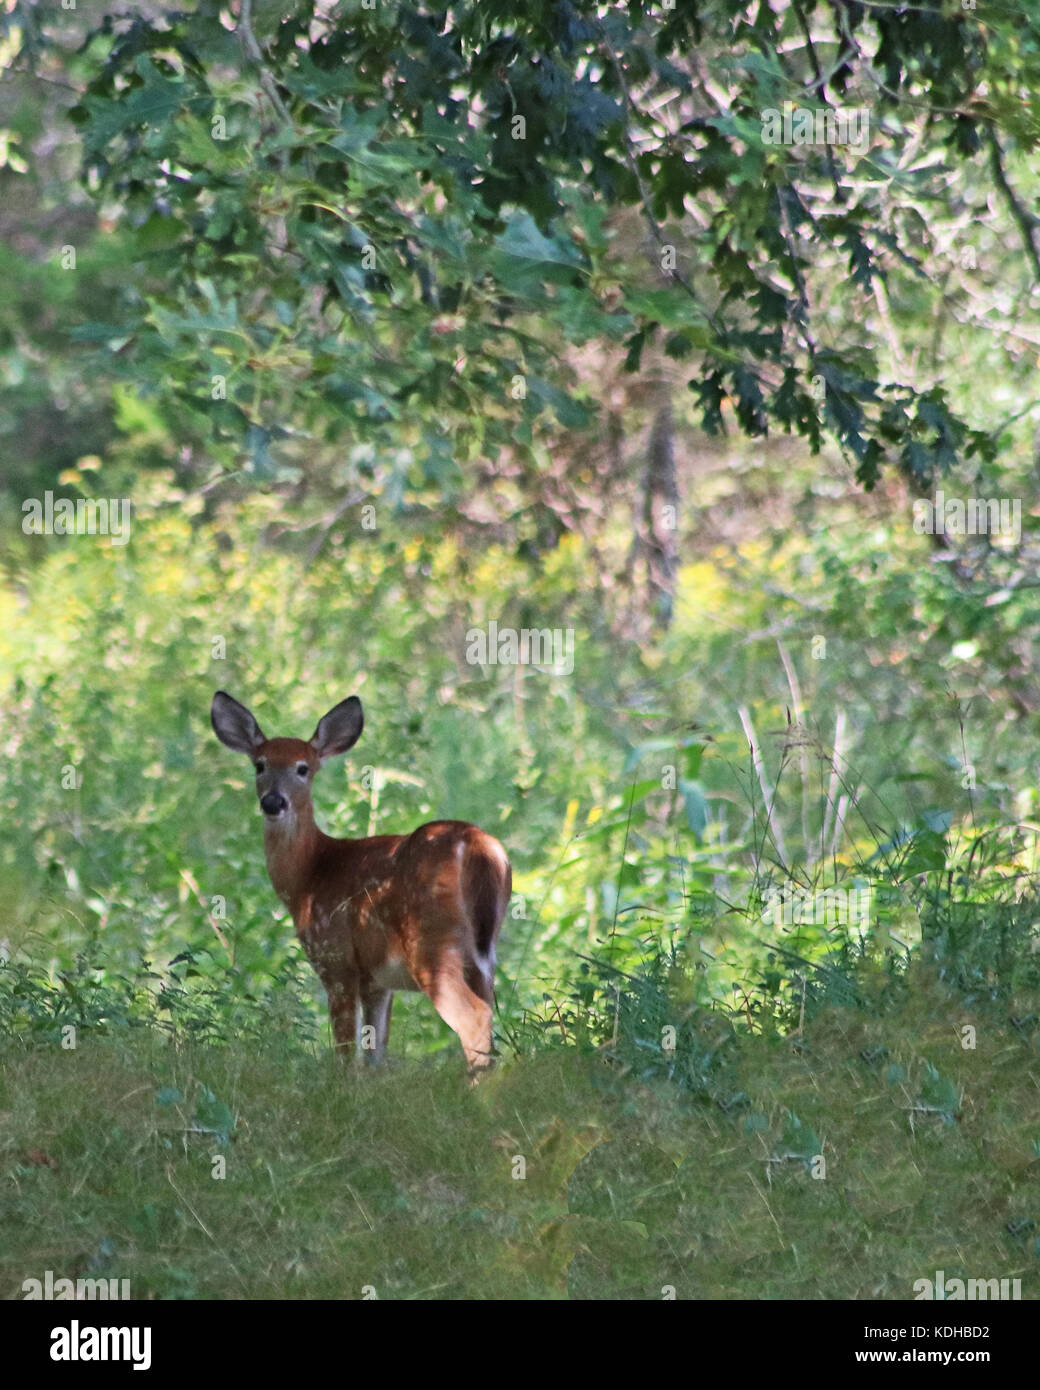 Bella la pelliccia rossastra con macchie bianche aiutano a mimetizzare il white-Tailed Deer Fawn nei boschi Foto Stock